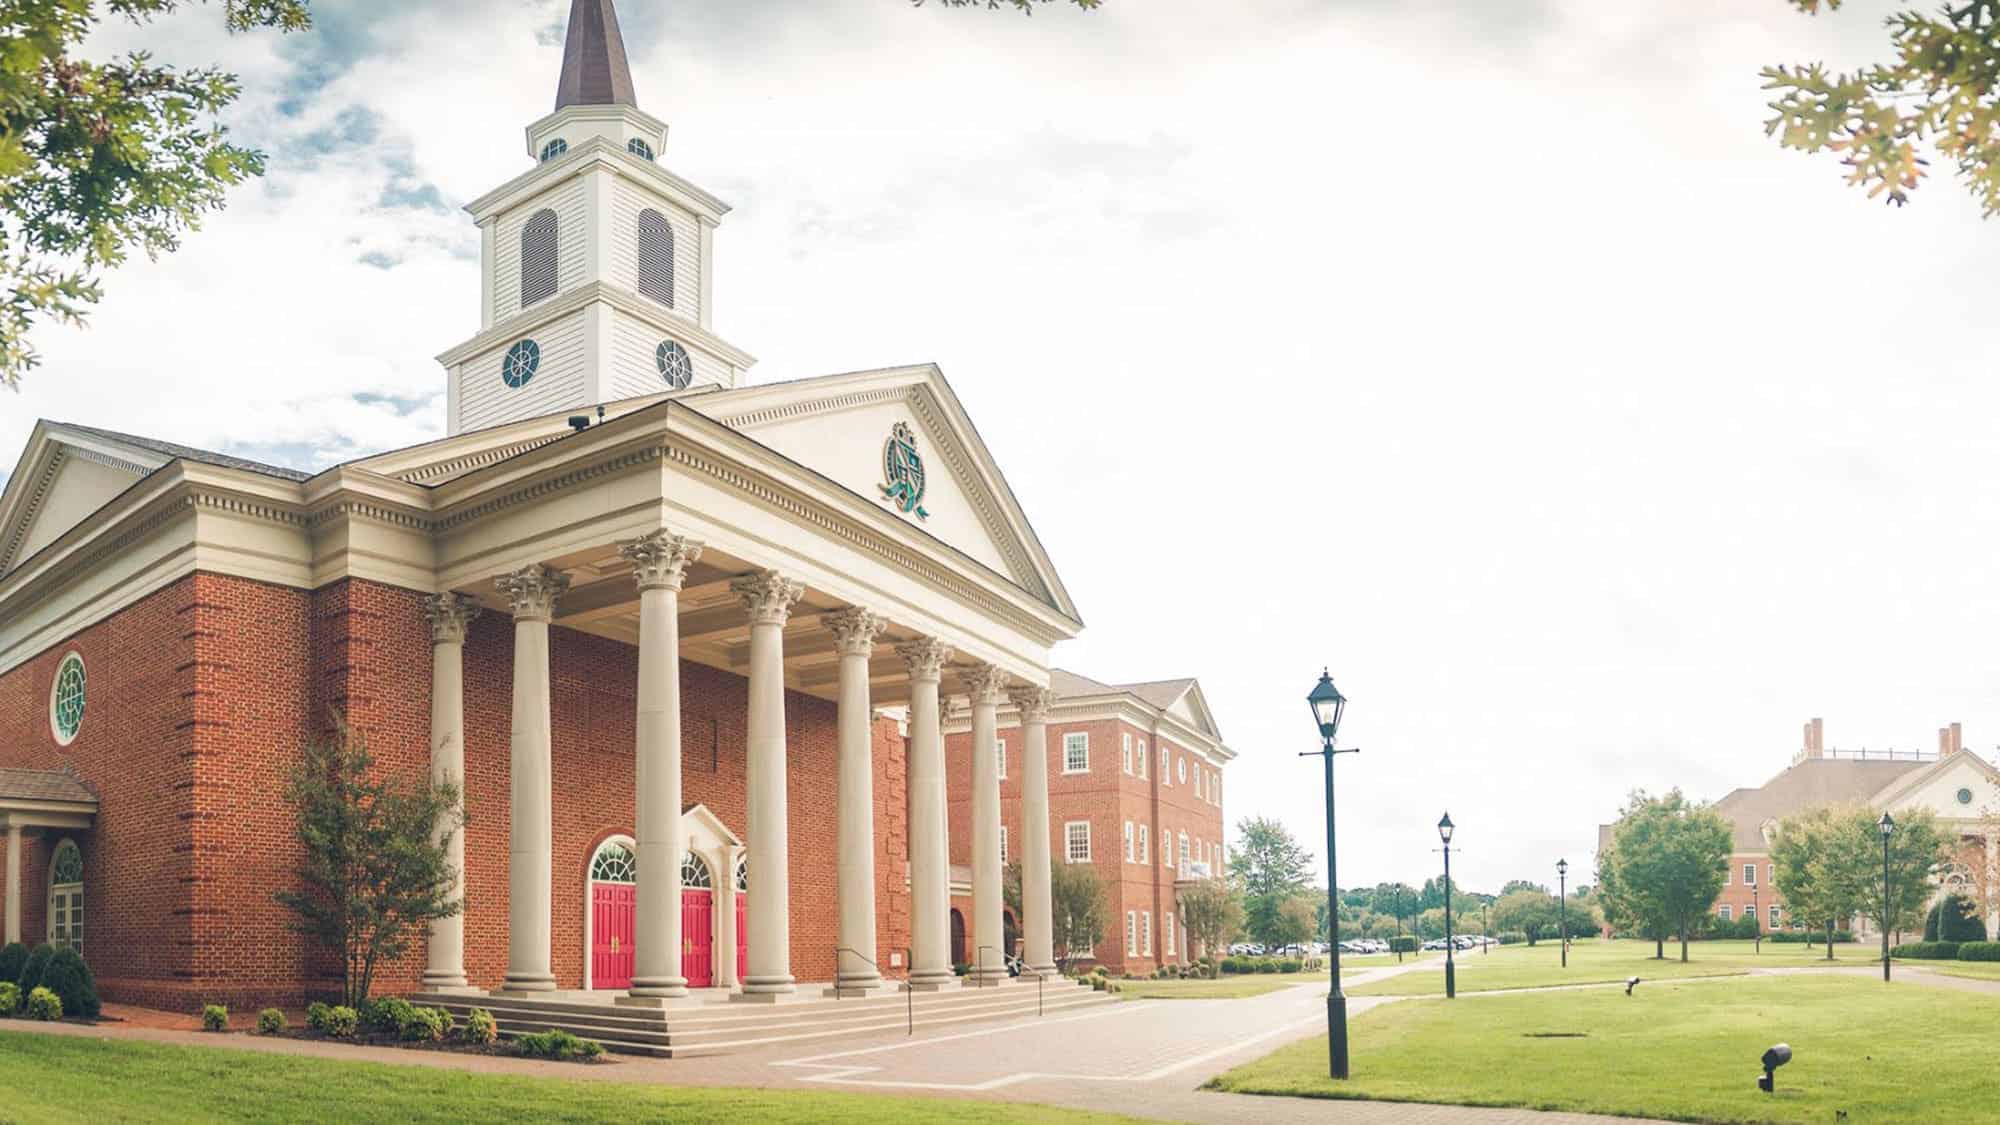 Regent University’s chapel and divinity school in Virginia Beach, VA 23464.